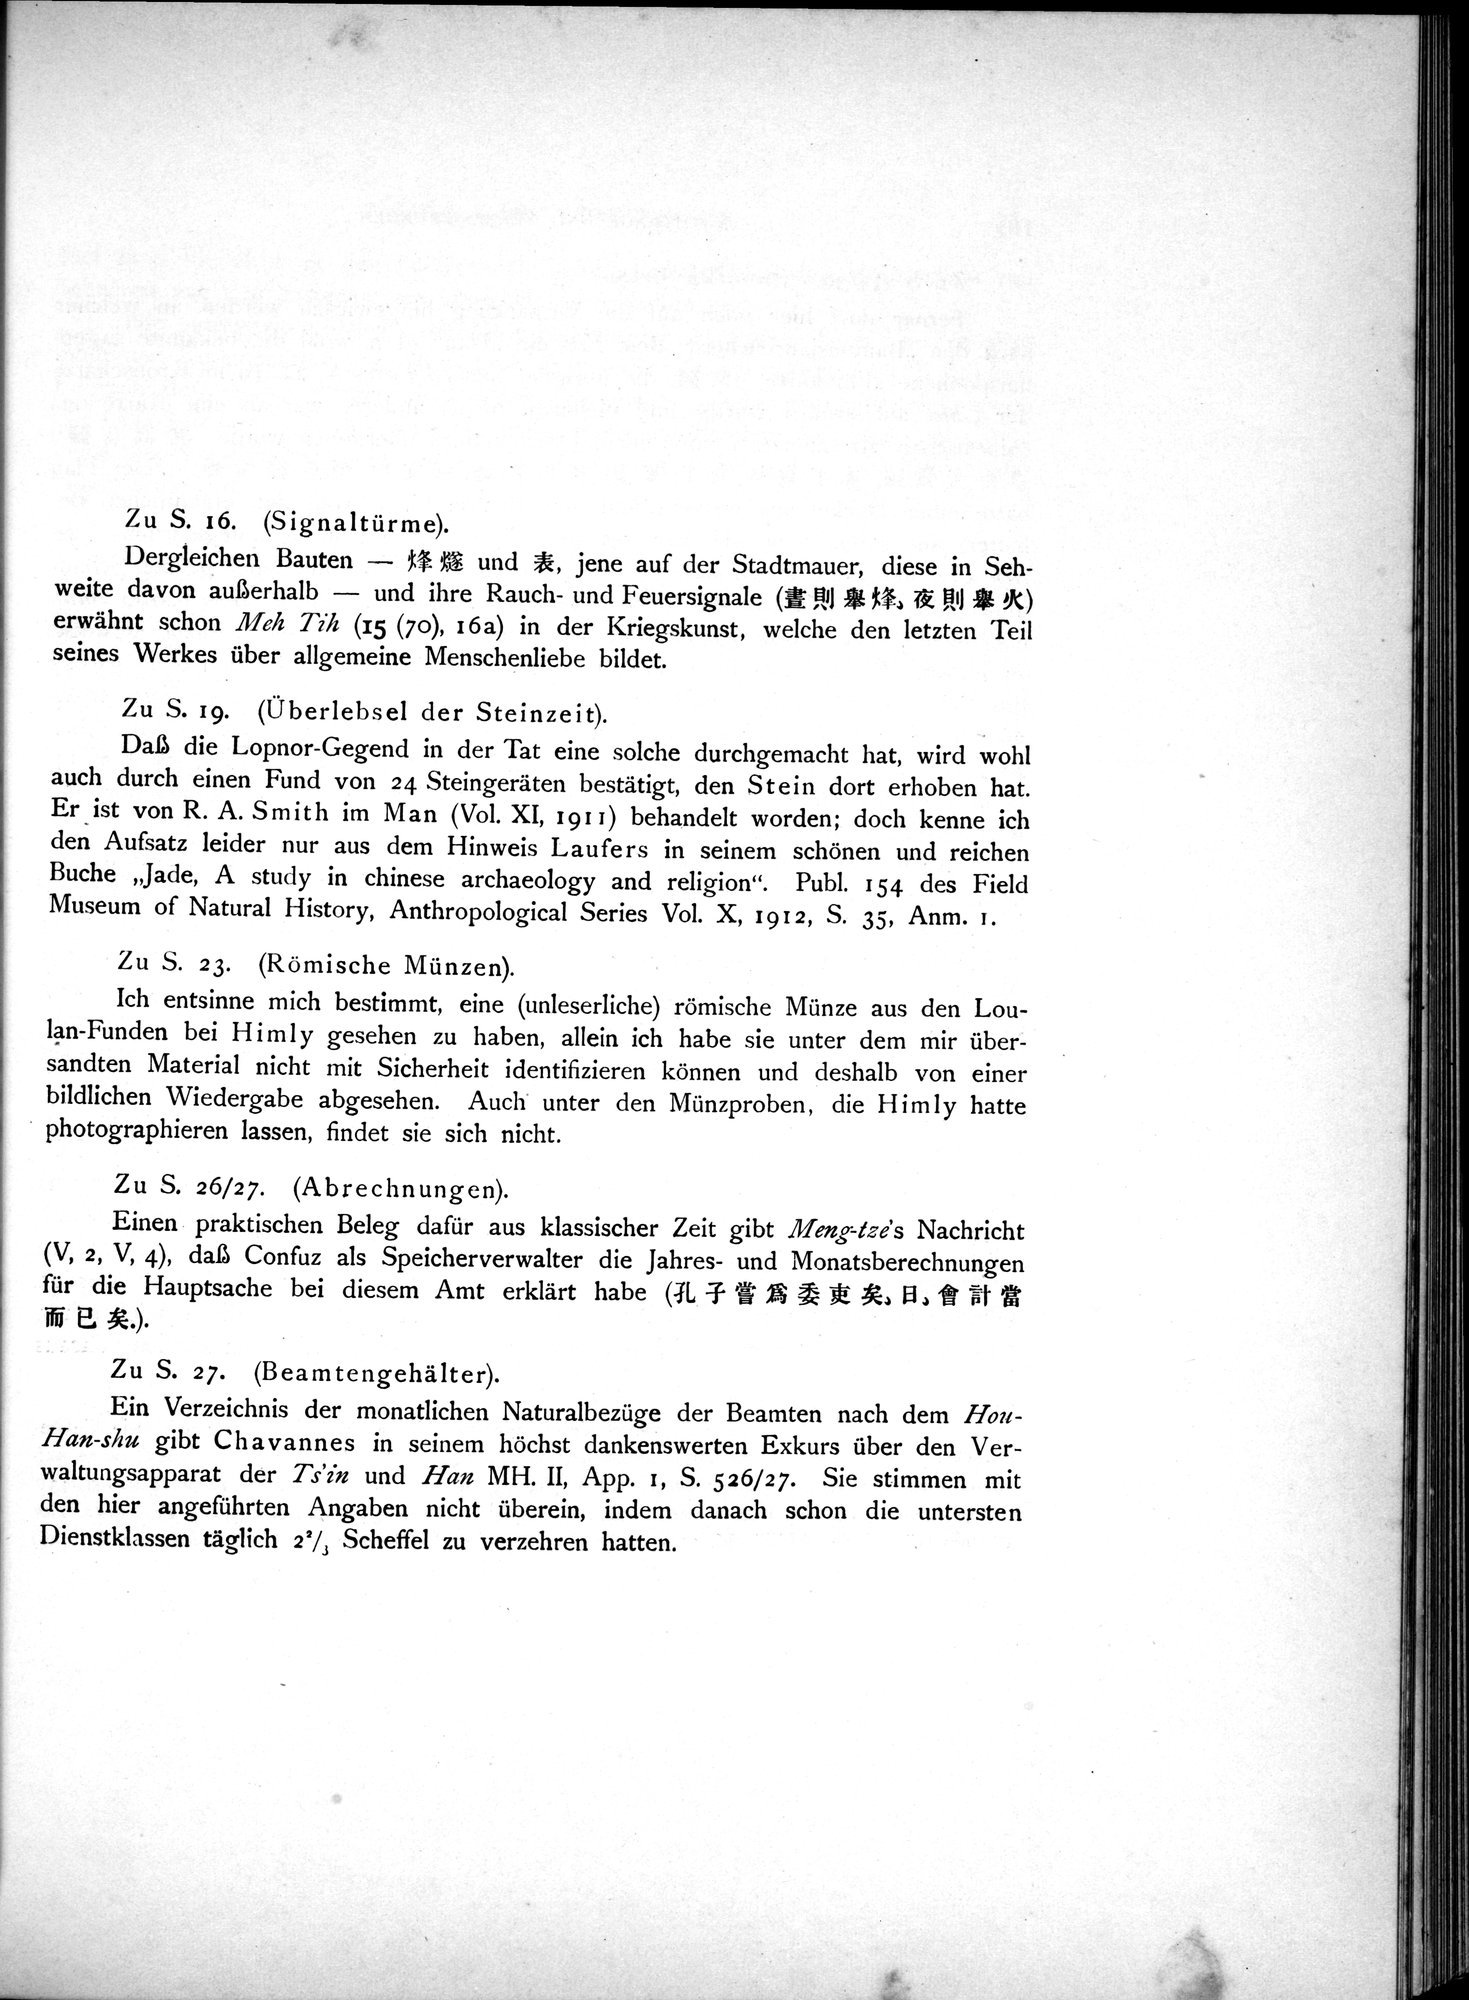 Die Chinesischen Handschriften- und sonstigen Kleinfunde Sven Hedins in Lou-lan : vol.1 / Page 205 (Grayscale High Resolution Image)